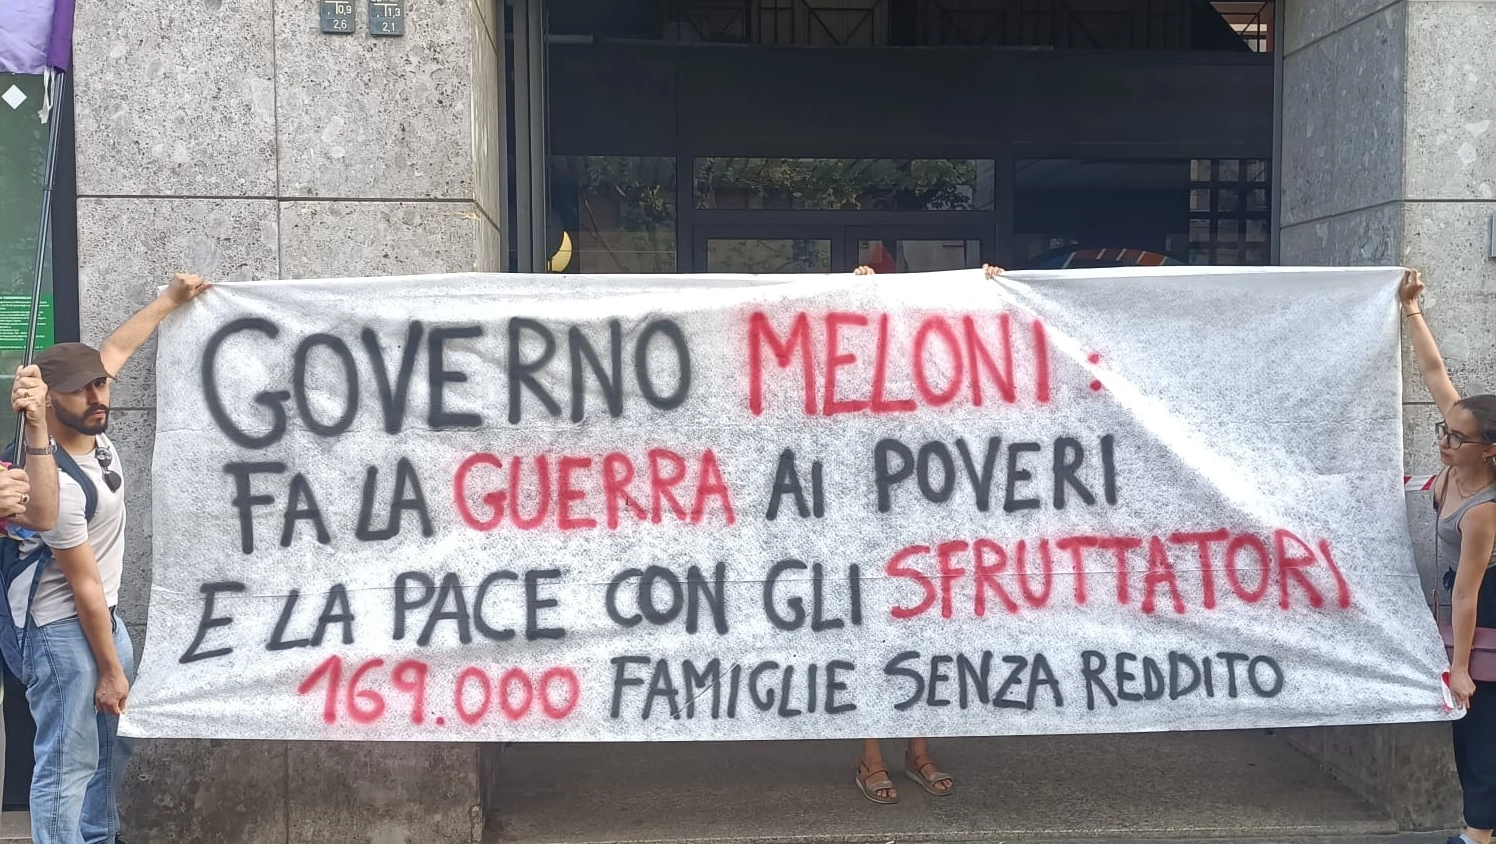 Reddito di cittadinanza, Potere al Popolo sotto la sede Inps di Milano: “Un attacco ai poveri”